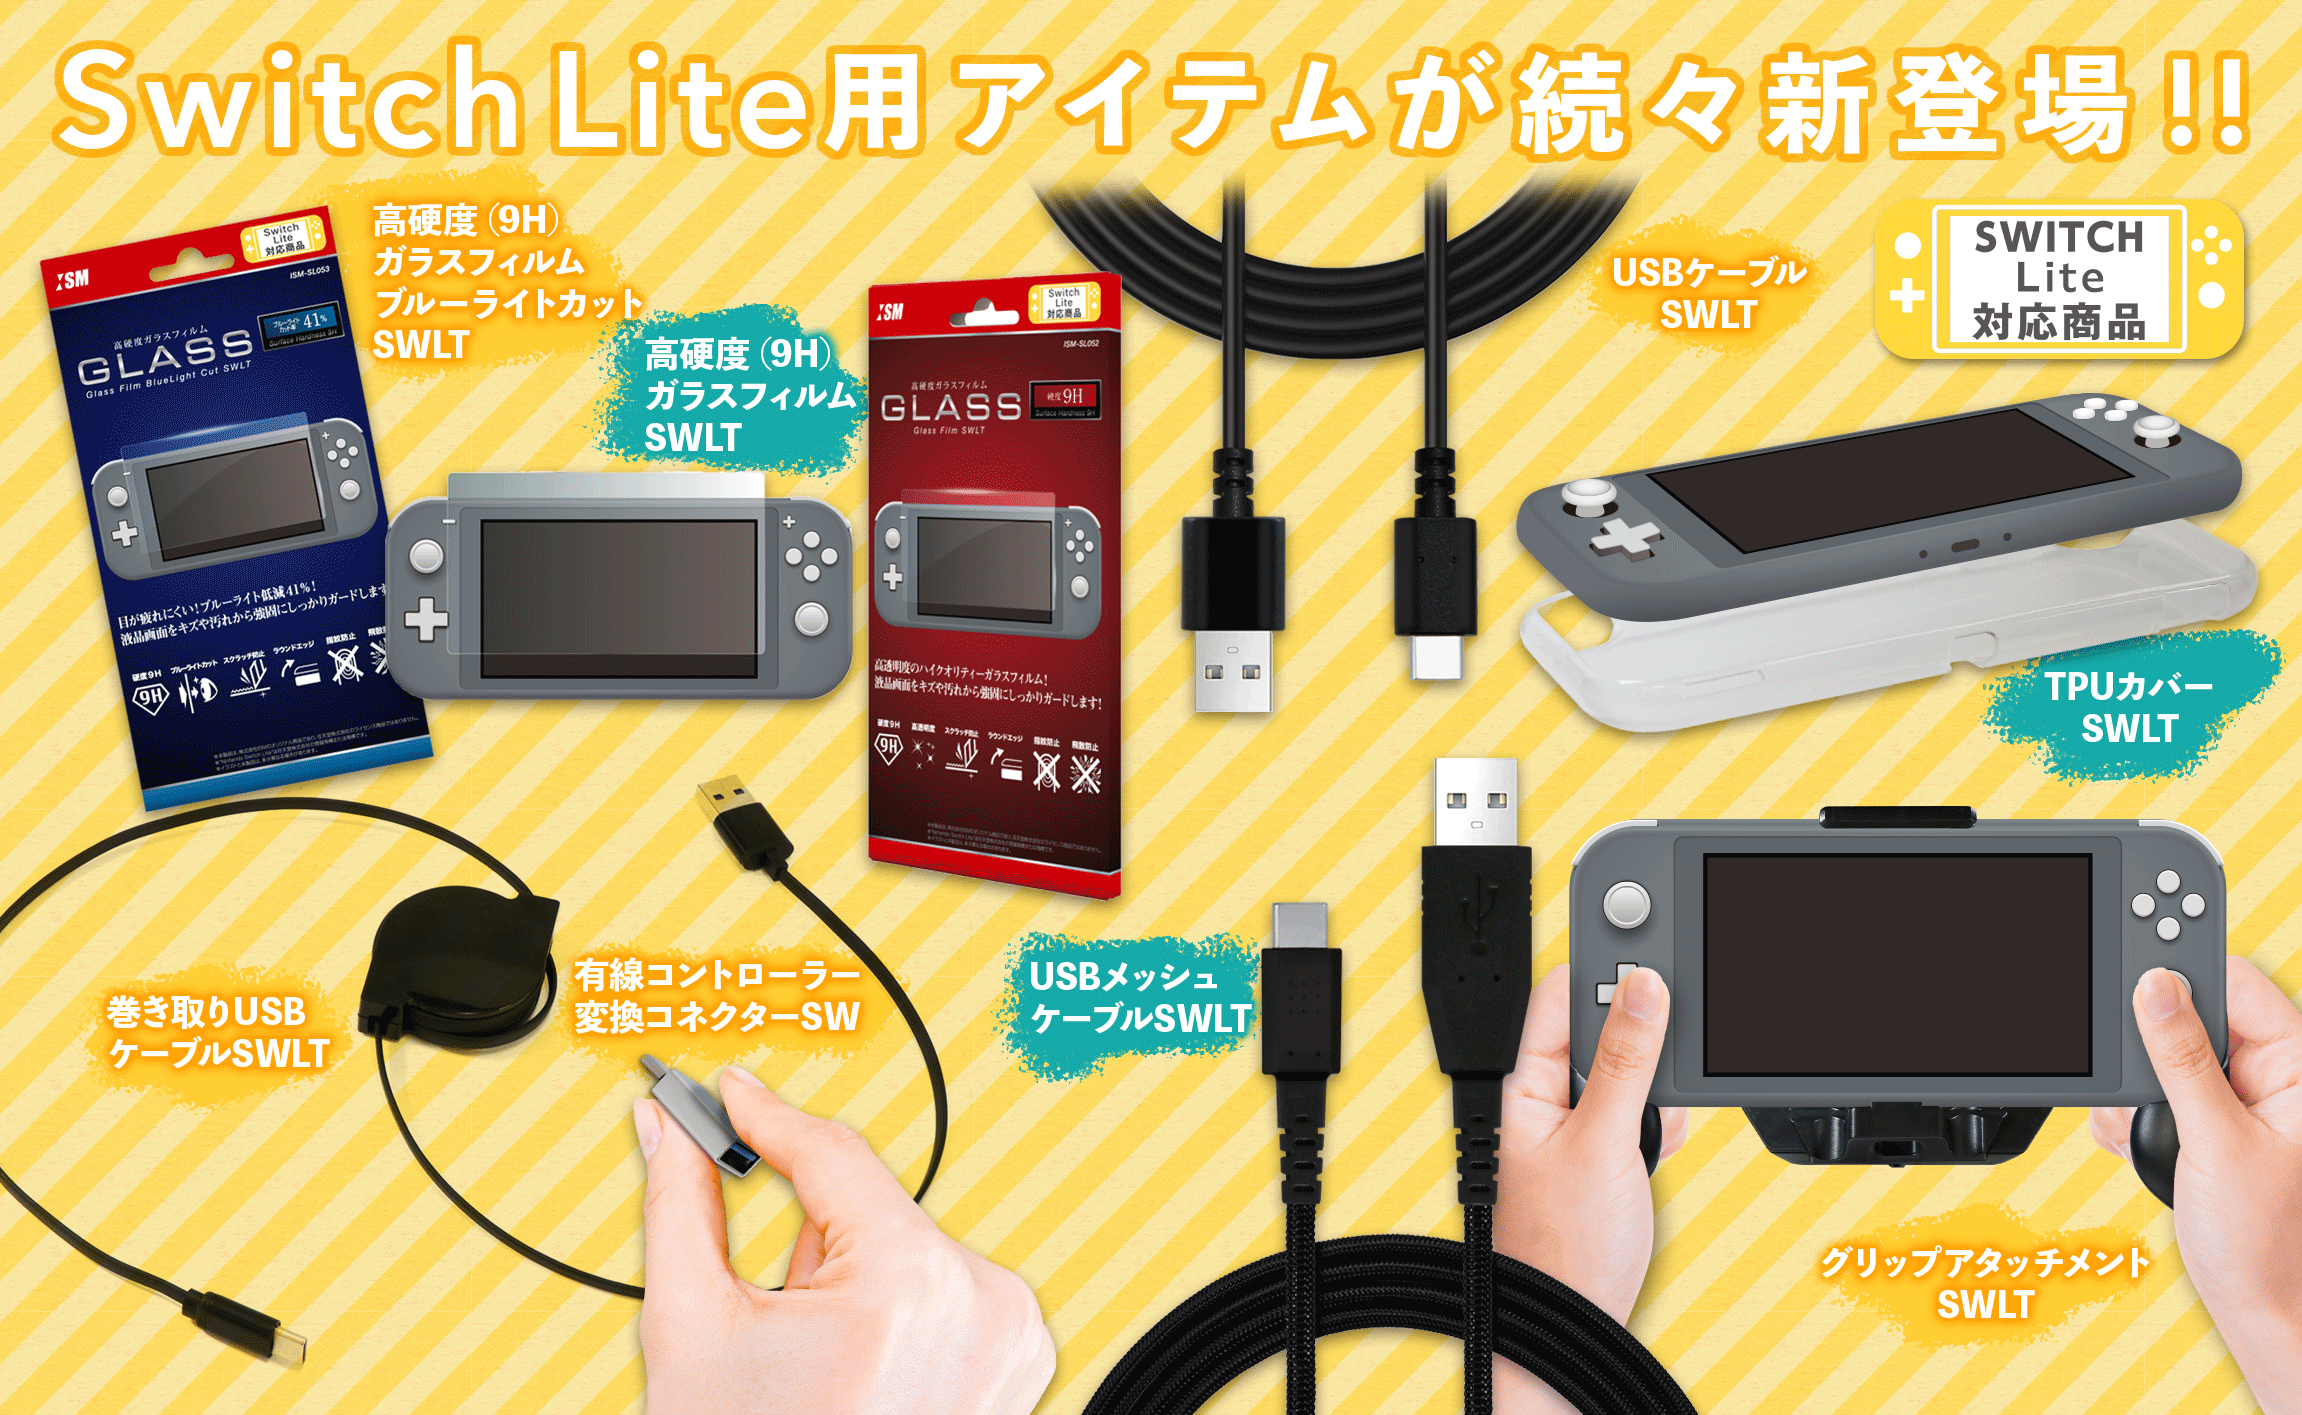 株式会社アクラスと株式会社ISMが「Nintendo Switch Lite」用のアクセサリーを発表！ | Nintendo Switch 情報ブログ